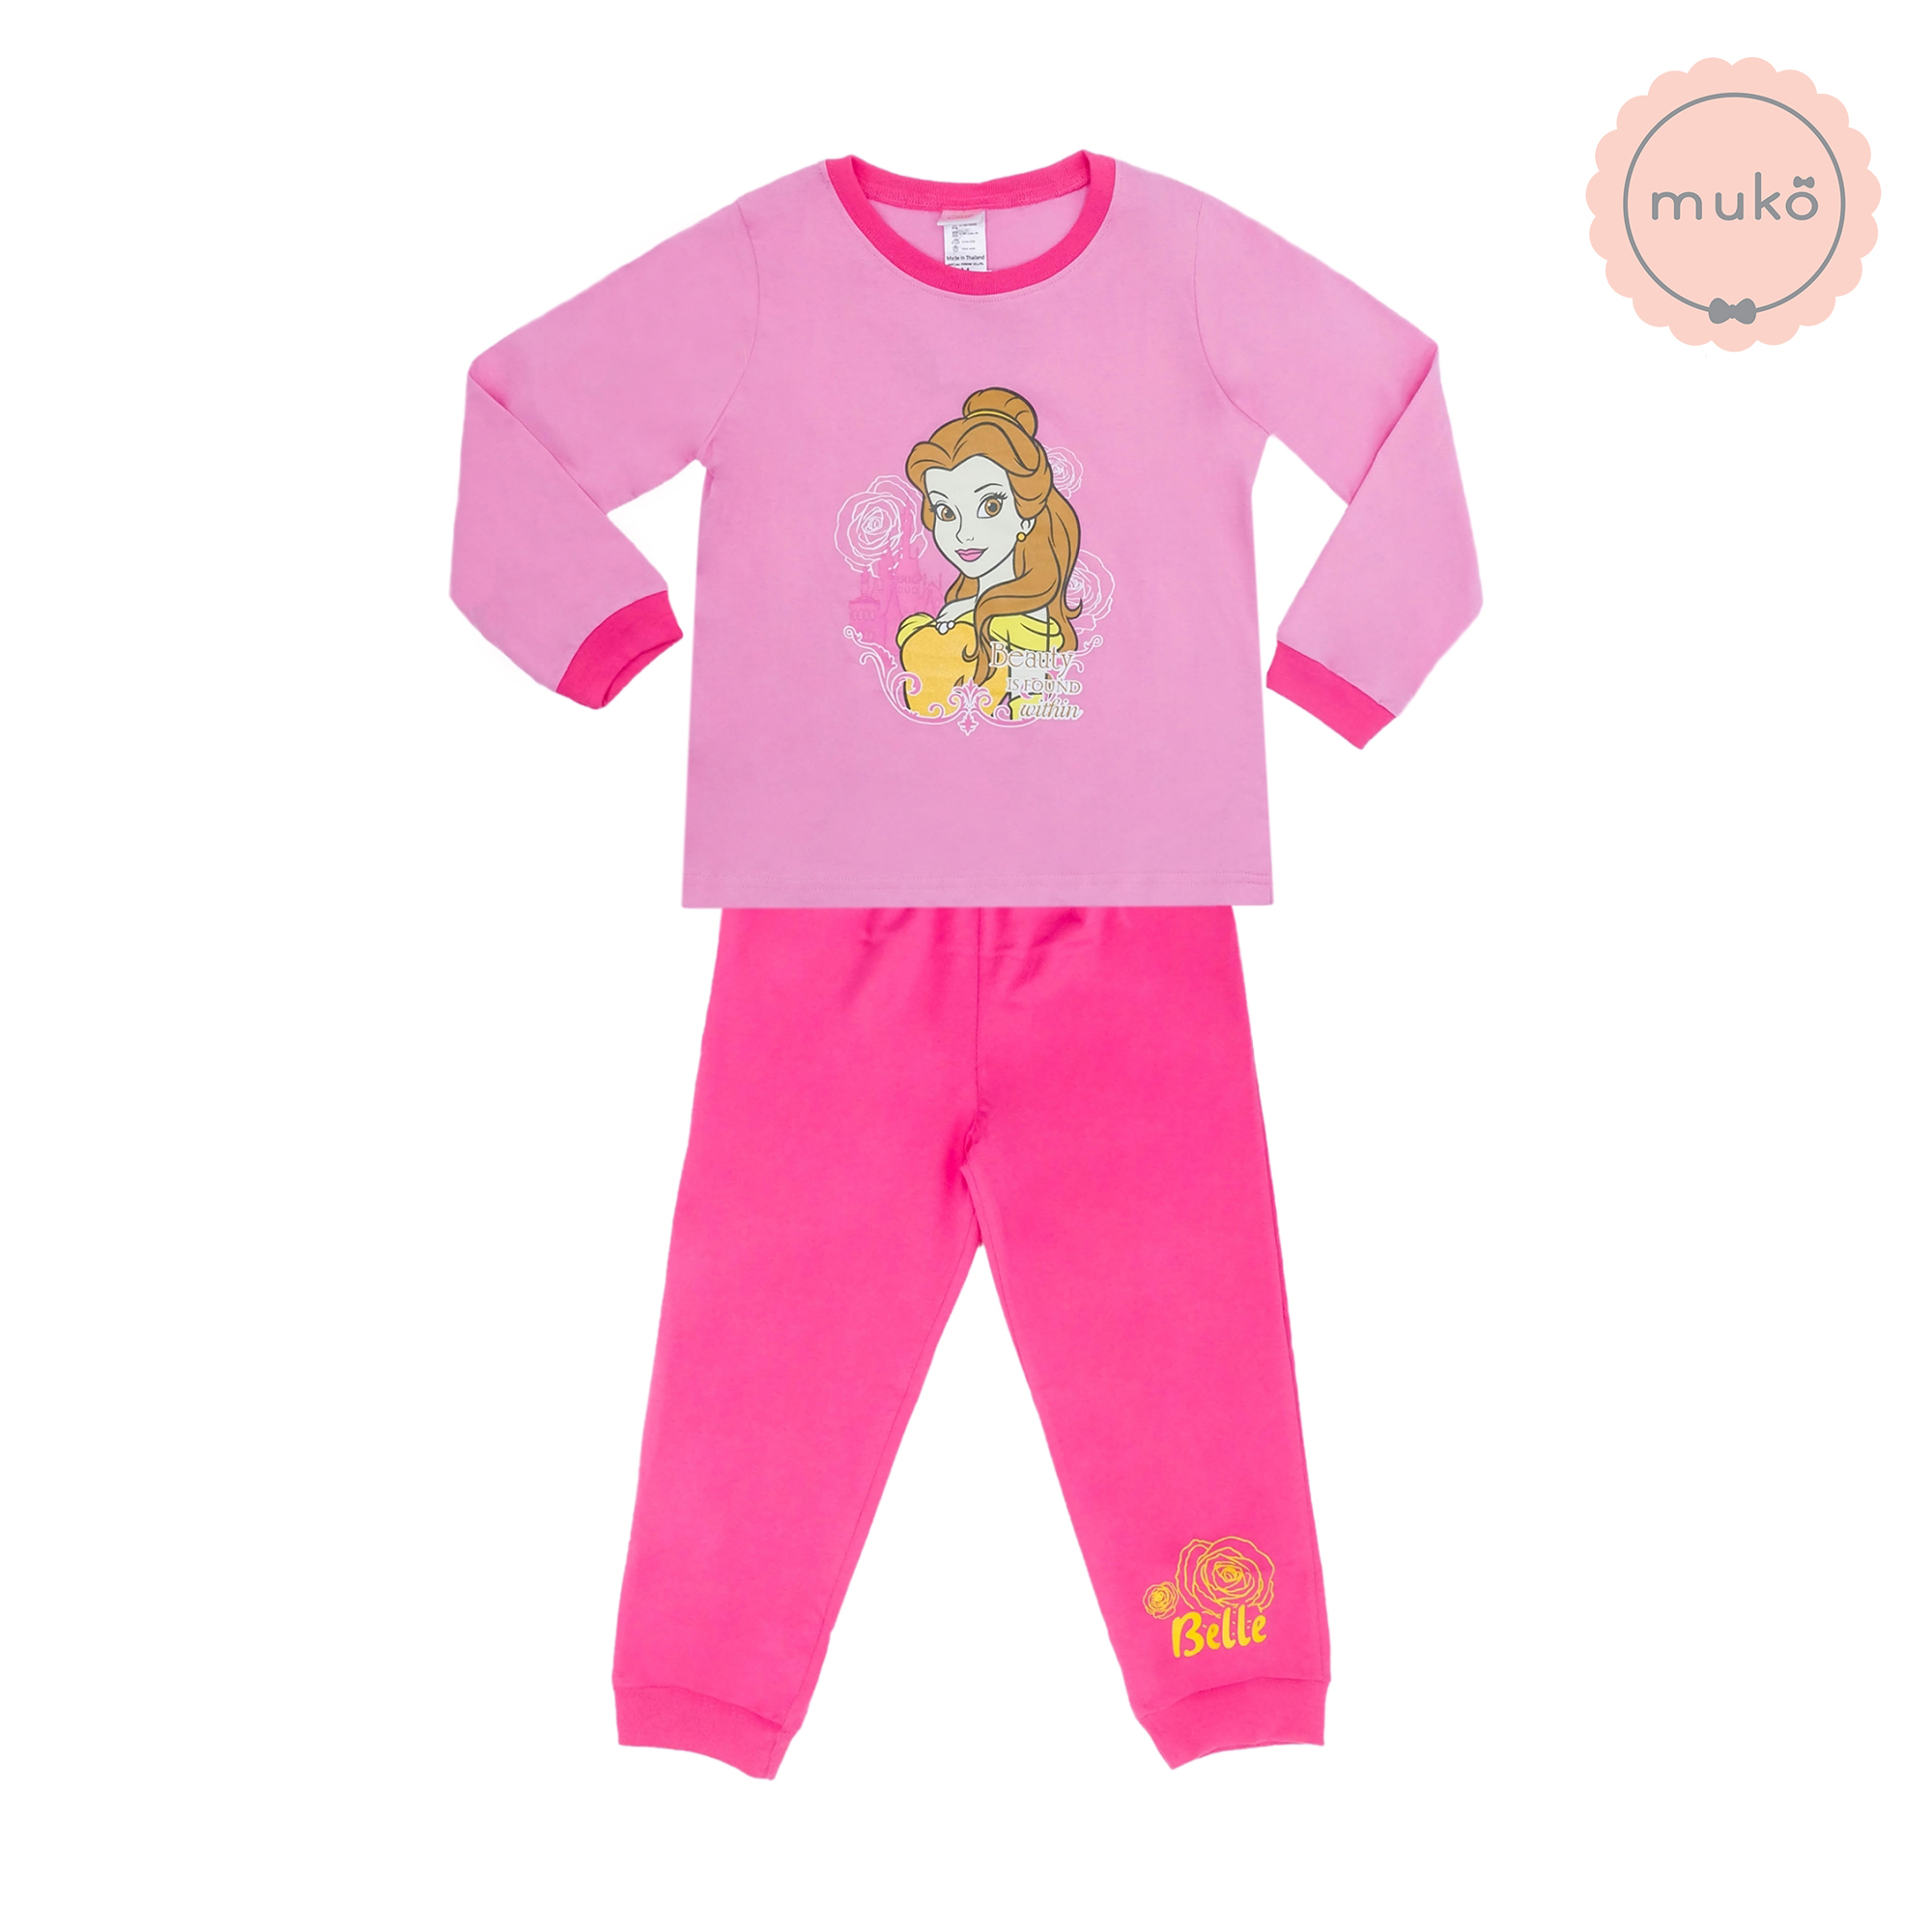 ชุดเด็ก 7-10 ขวบ แขนยาว-ขายาว (Size XL) DPC127-03-XL-Pink XL ลาย เจ้าหญิงเบลล์ Belle (เสื้อชมพูกางเกงชมพูเข้ม)